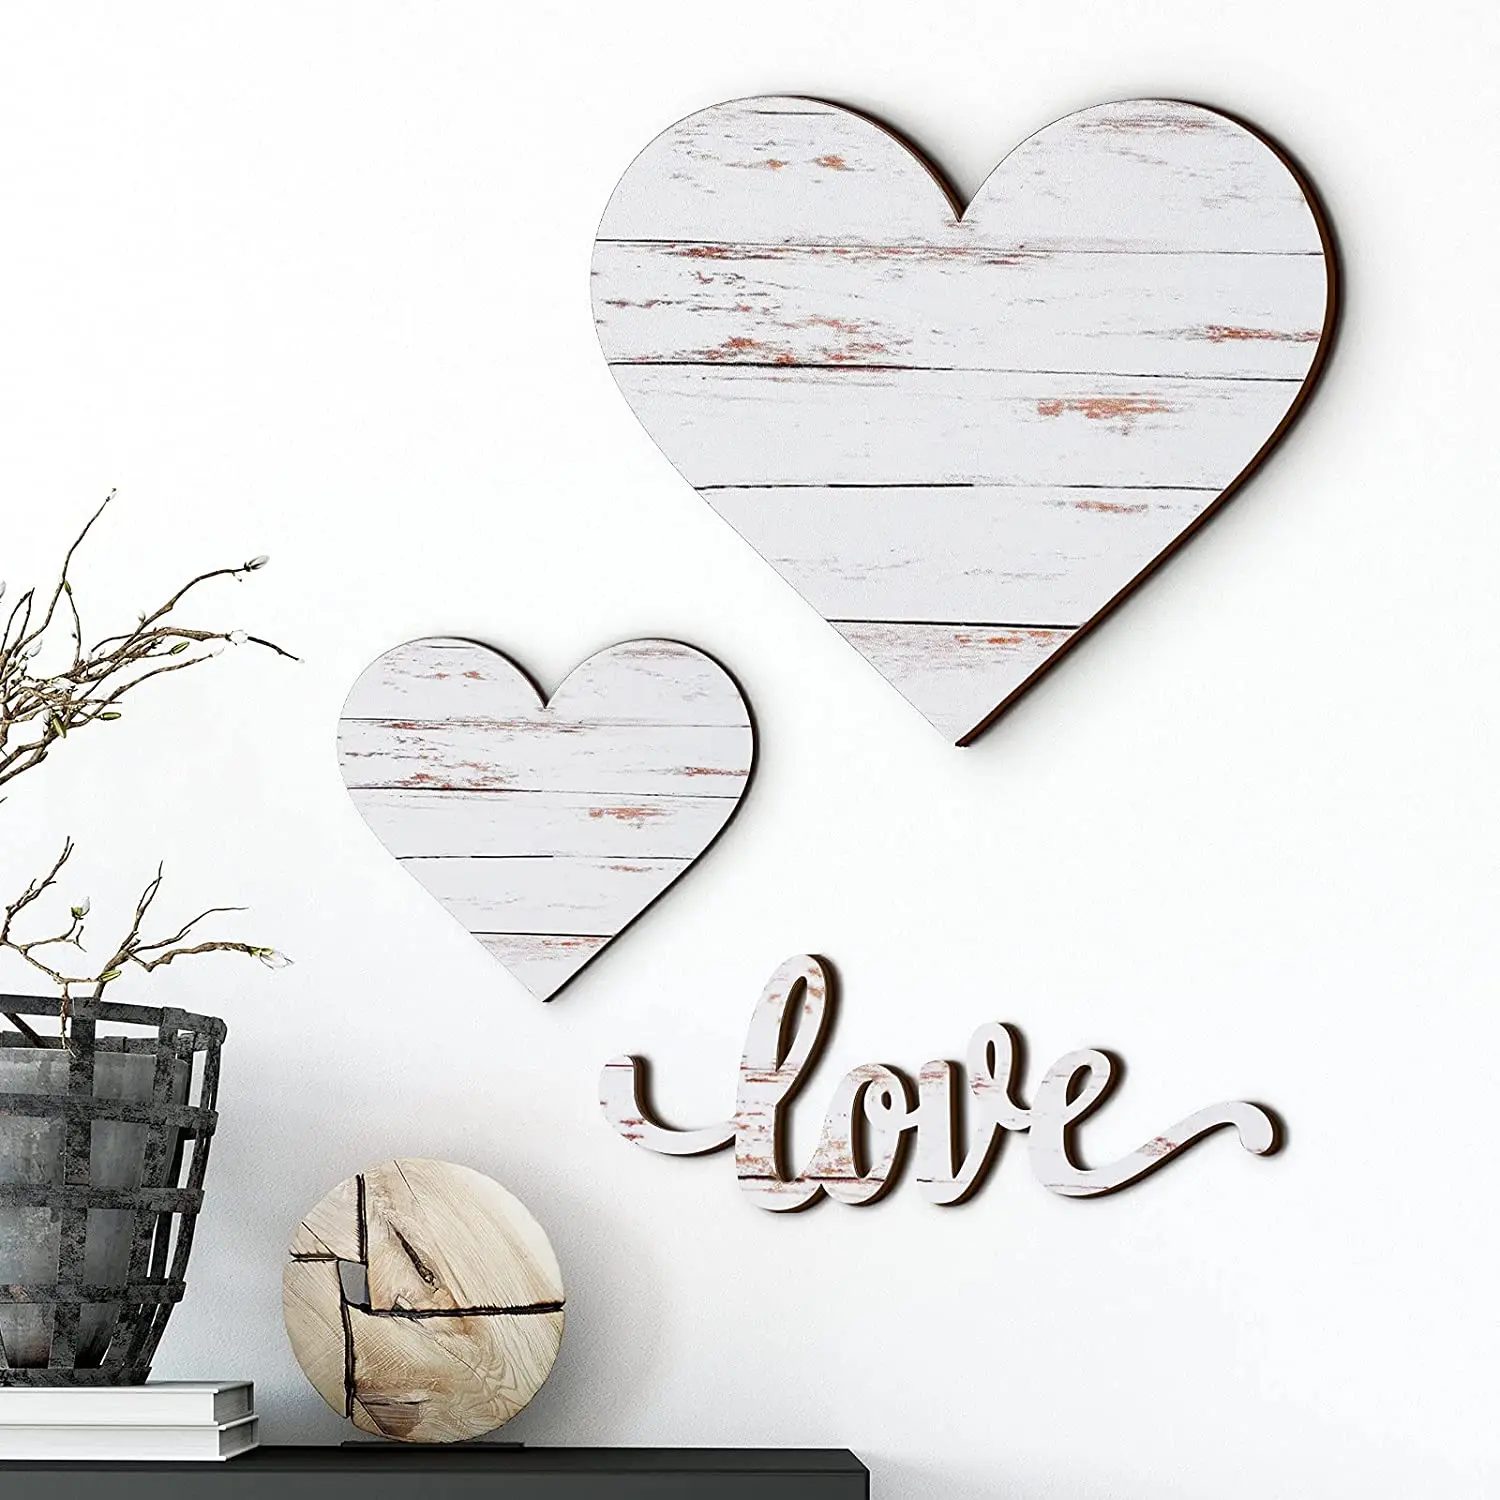 Biển gỗ hình trái tim chắc chắn sẽ đem đến cho không gian của bạn một vẻ đẹp và sự lãng mạn đầy ý nghĩa. Hãy khám phá bức ảnh liên quan để cảm nhận thiết kế độc đáo của biển gỗ hình trái tim và đưa nó vào không gian của bạn.